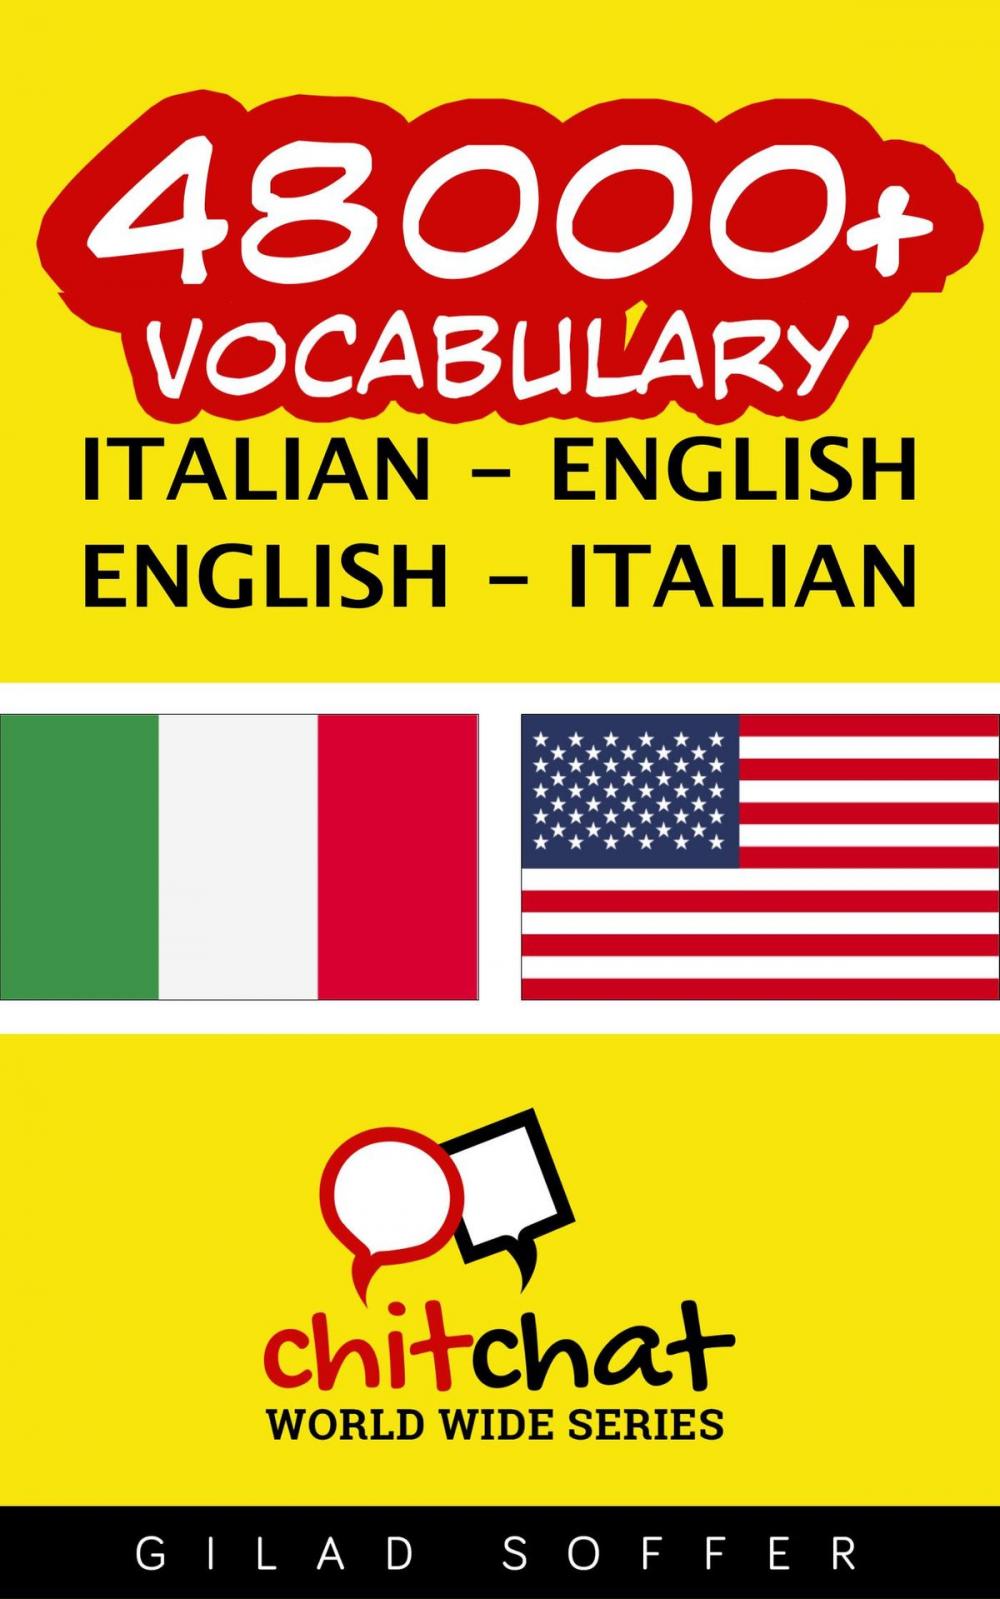 Big bigCover of 48000+ Vocabulary Italian - English